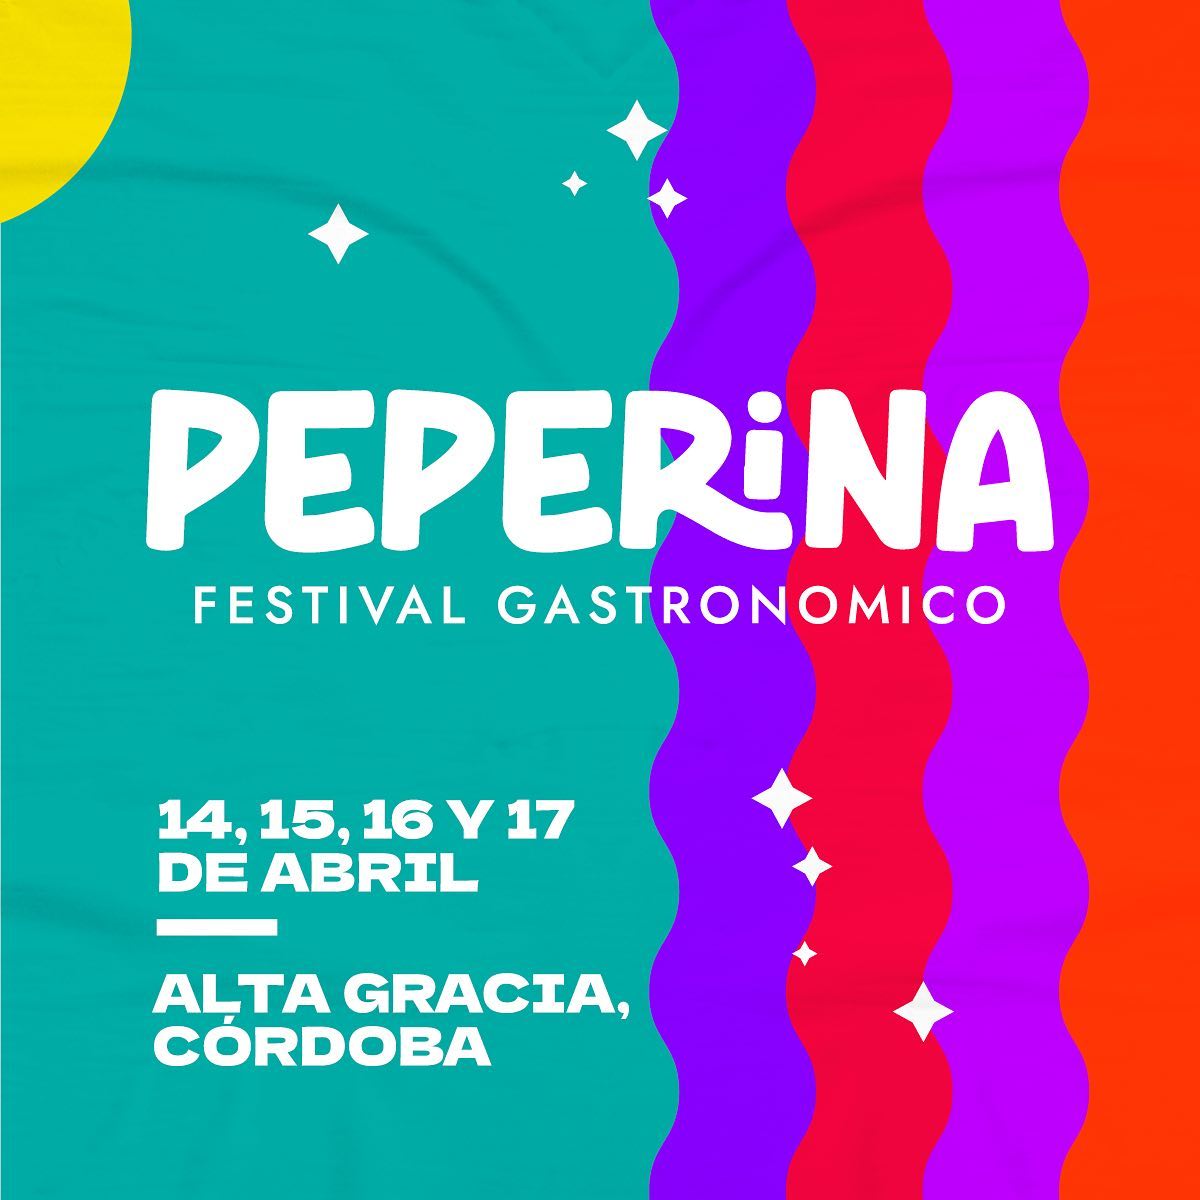 La ciudad de Alta Gracia prepara una nueva edición de Peperina a lo grande